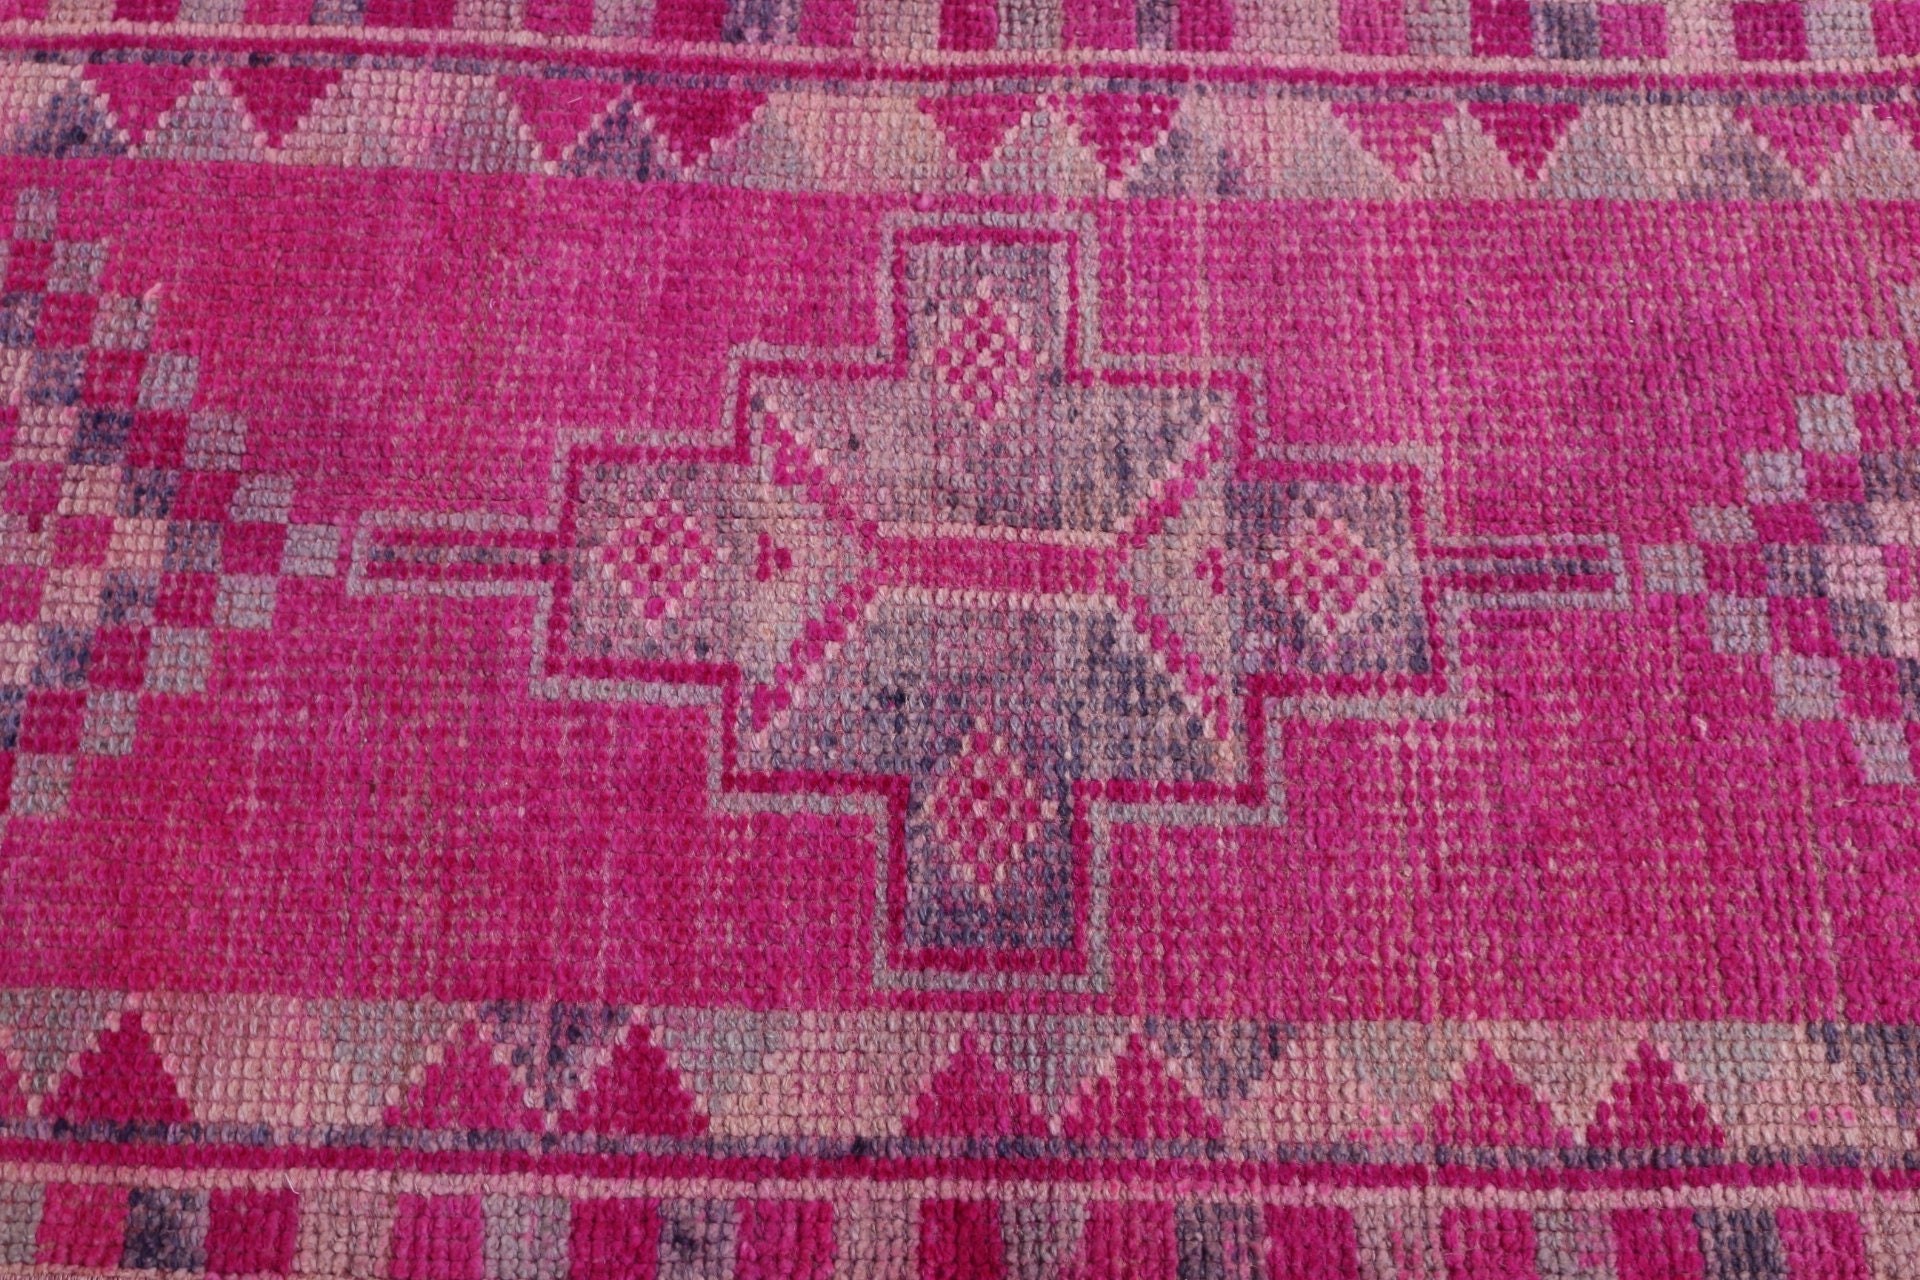 Hallway Rug, Wool Rug, Turkish Rugs, 2.6x9.7 ft Runner Rugs, Rugs for Corridor, Pink Kitchen Rug, Vintage Rugs, Stair Rug, Anatolian Rugs